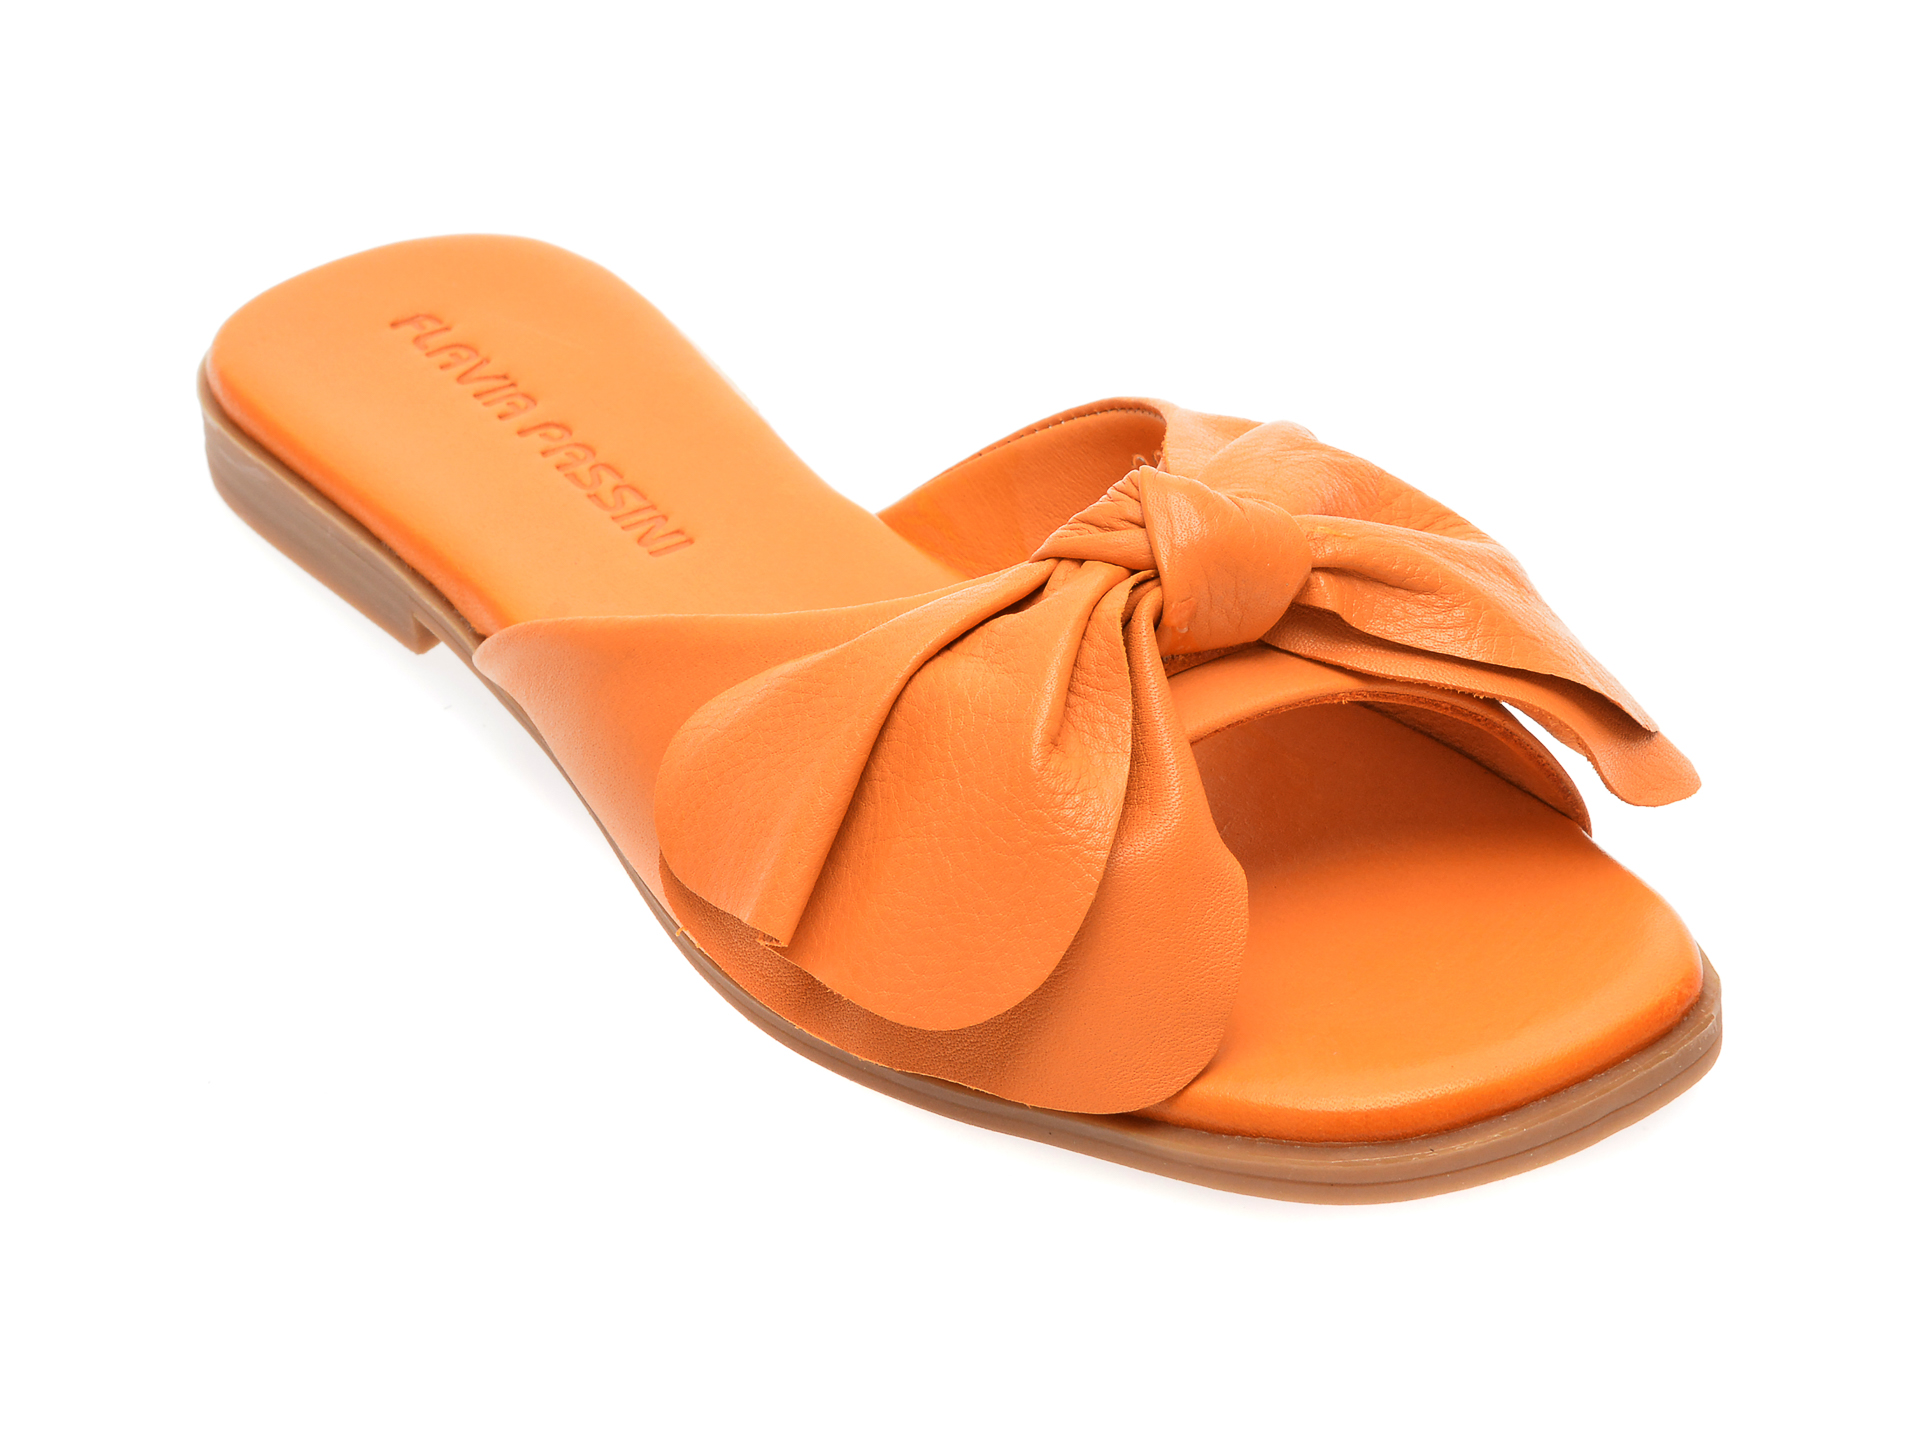 Papuci FLAVIA PASSINI portocalii, 3022612, din piele naturala Flavia Passini